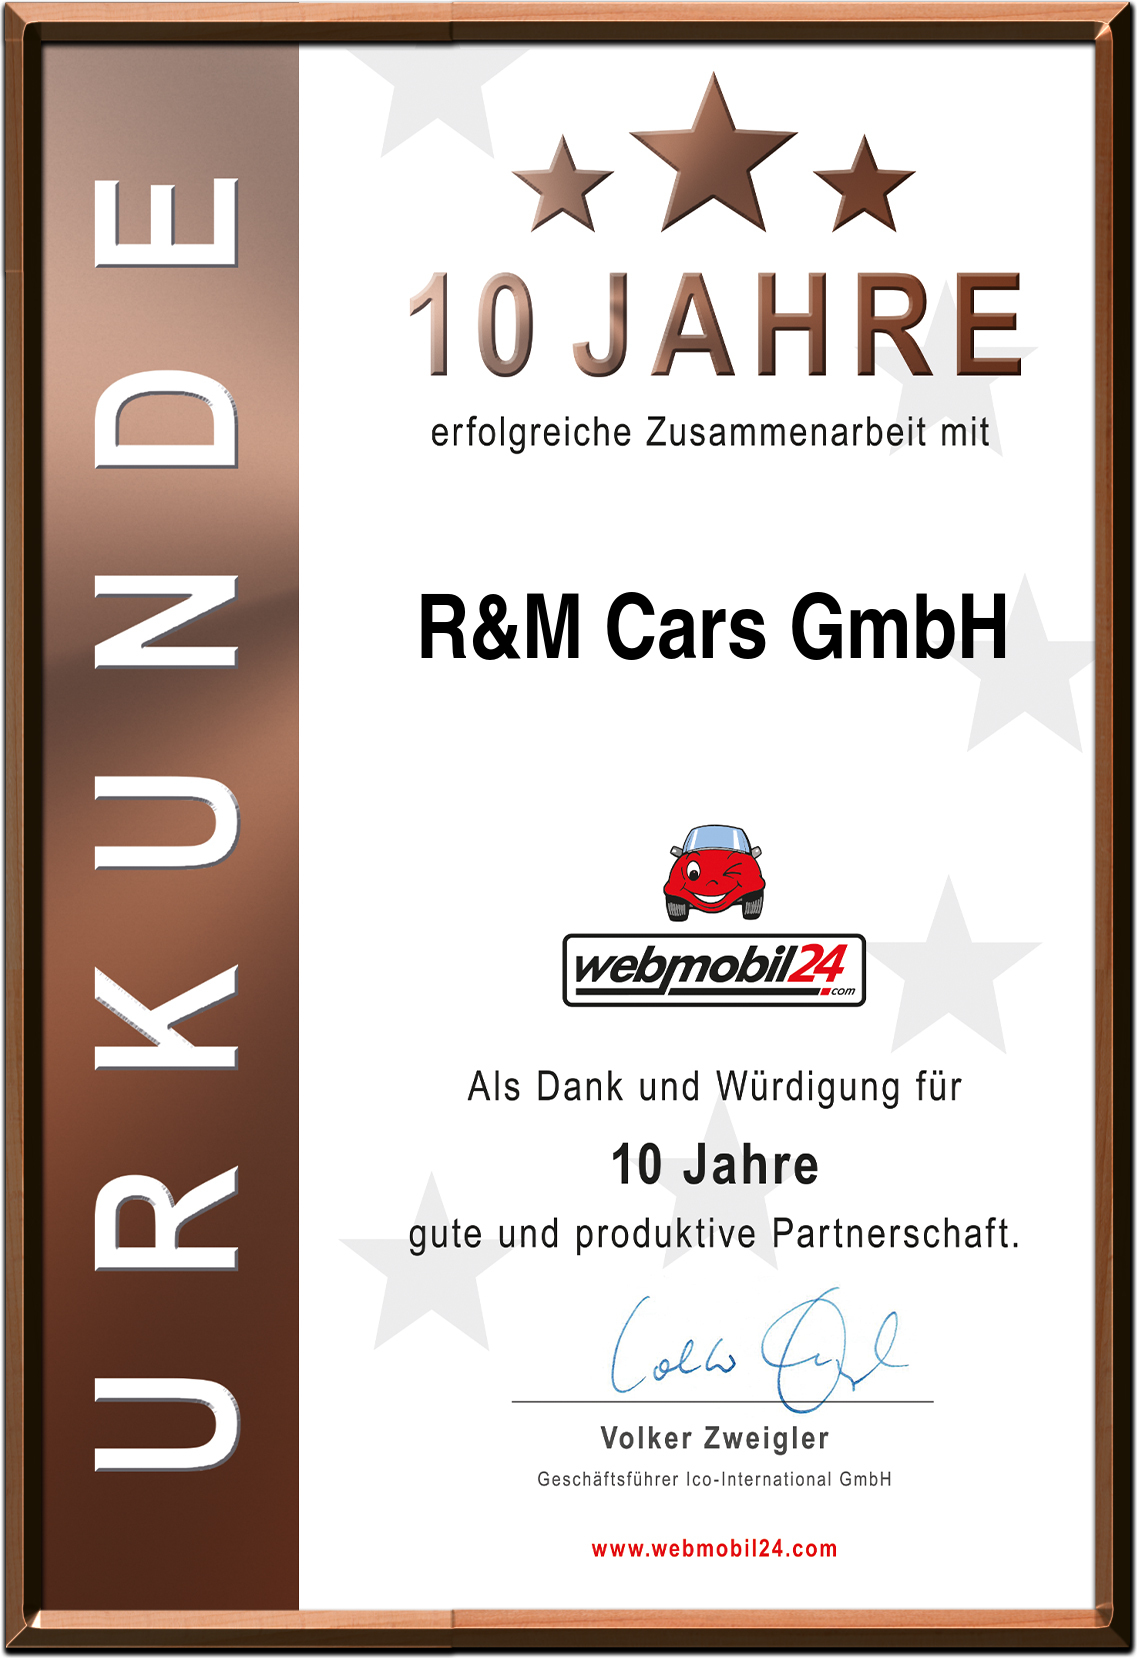 R&M Cars GmbH